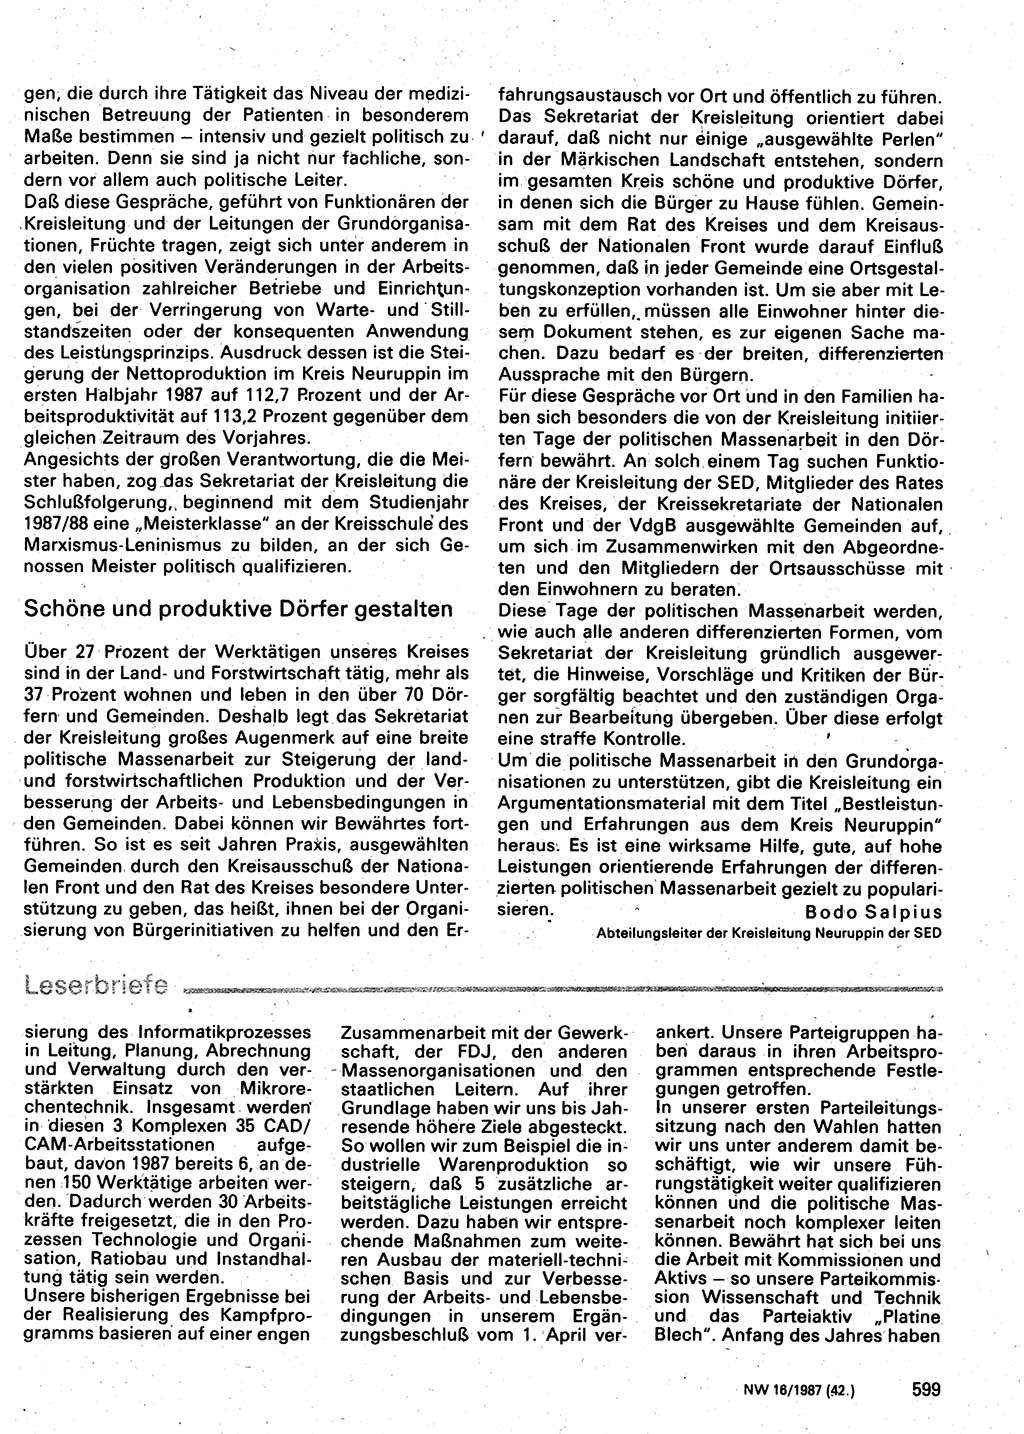 Neuer Weg (NW), Organ des Zentralkomitees (ZK) der SED (Sozialistische Einheitspartei Deutschlands) für Fragen des Parteilebens, 42. Jahrgang [Deutsche Demokratische Republik (DDR)] 1987, Seite 599 (NW ZK SED DDR 1987, S. 599)